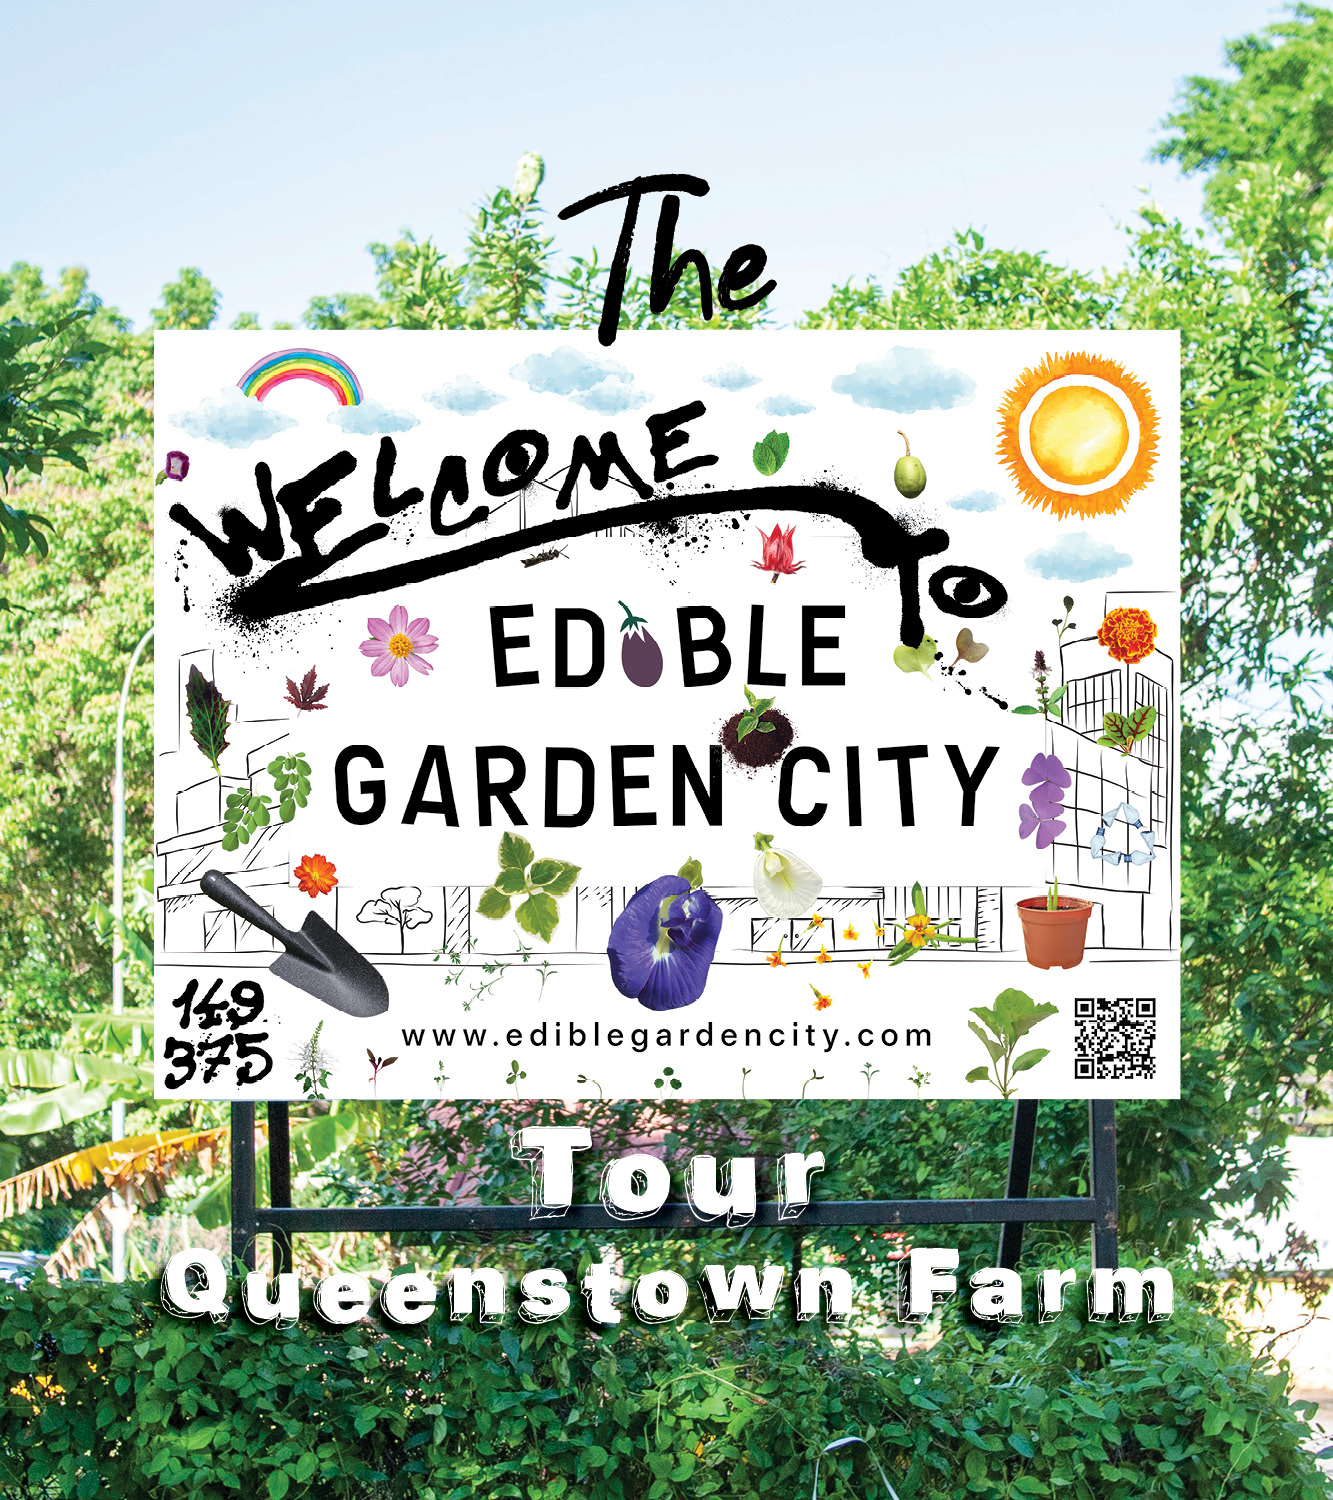 The Edible Garden City Tour: Queenstown Farm